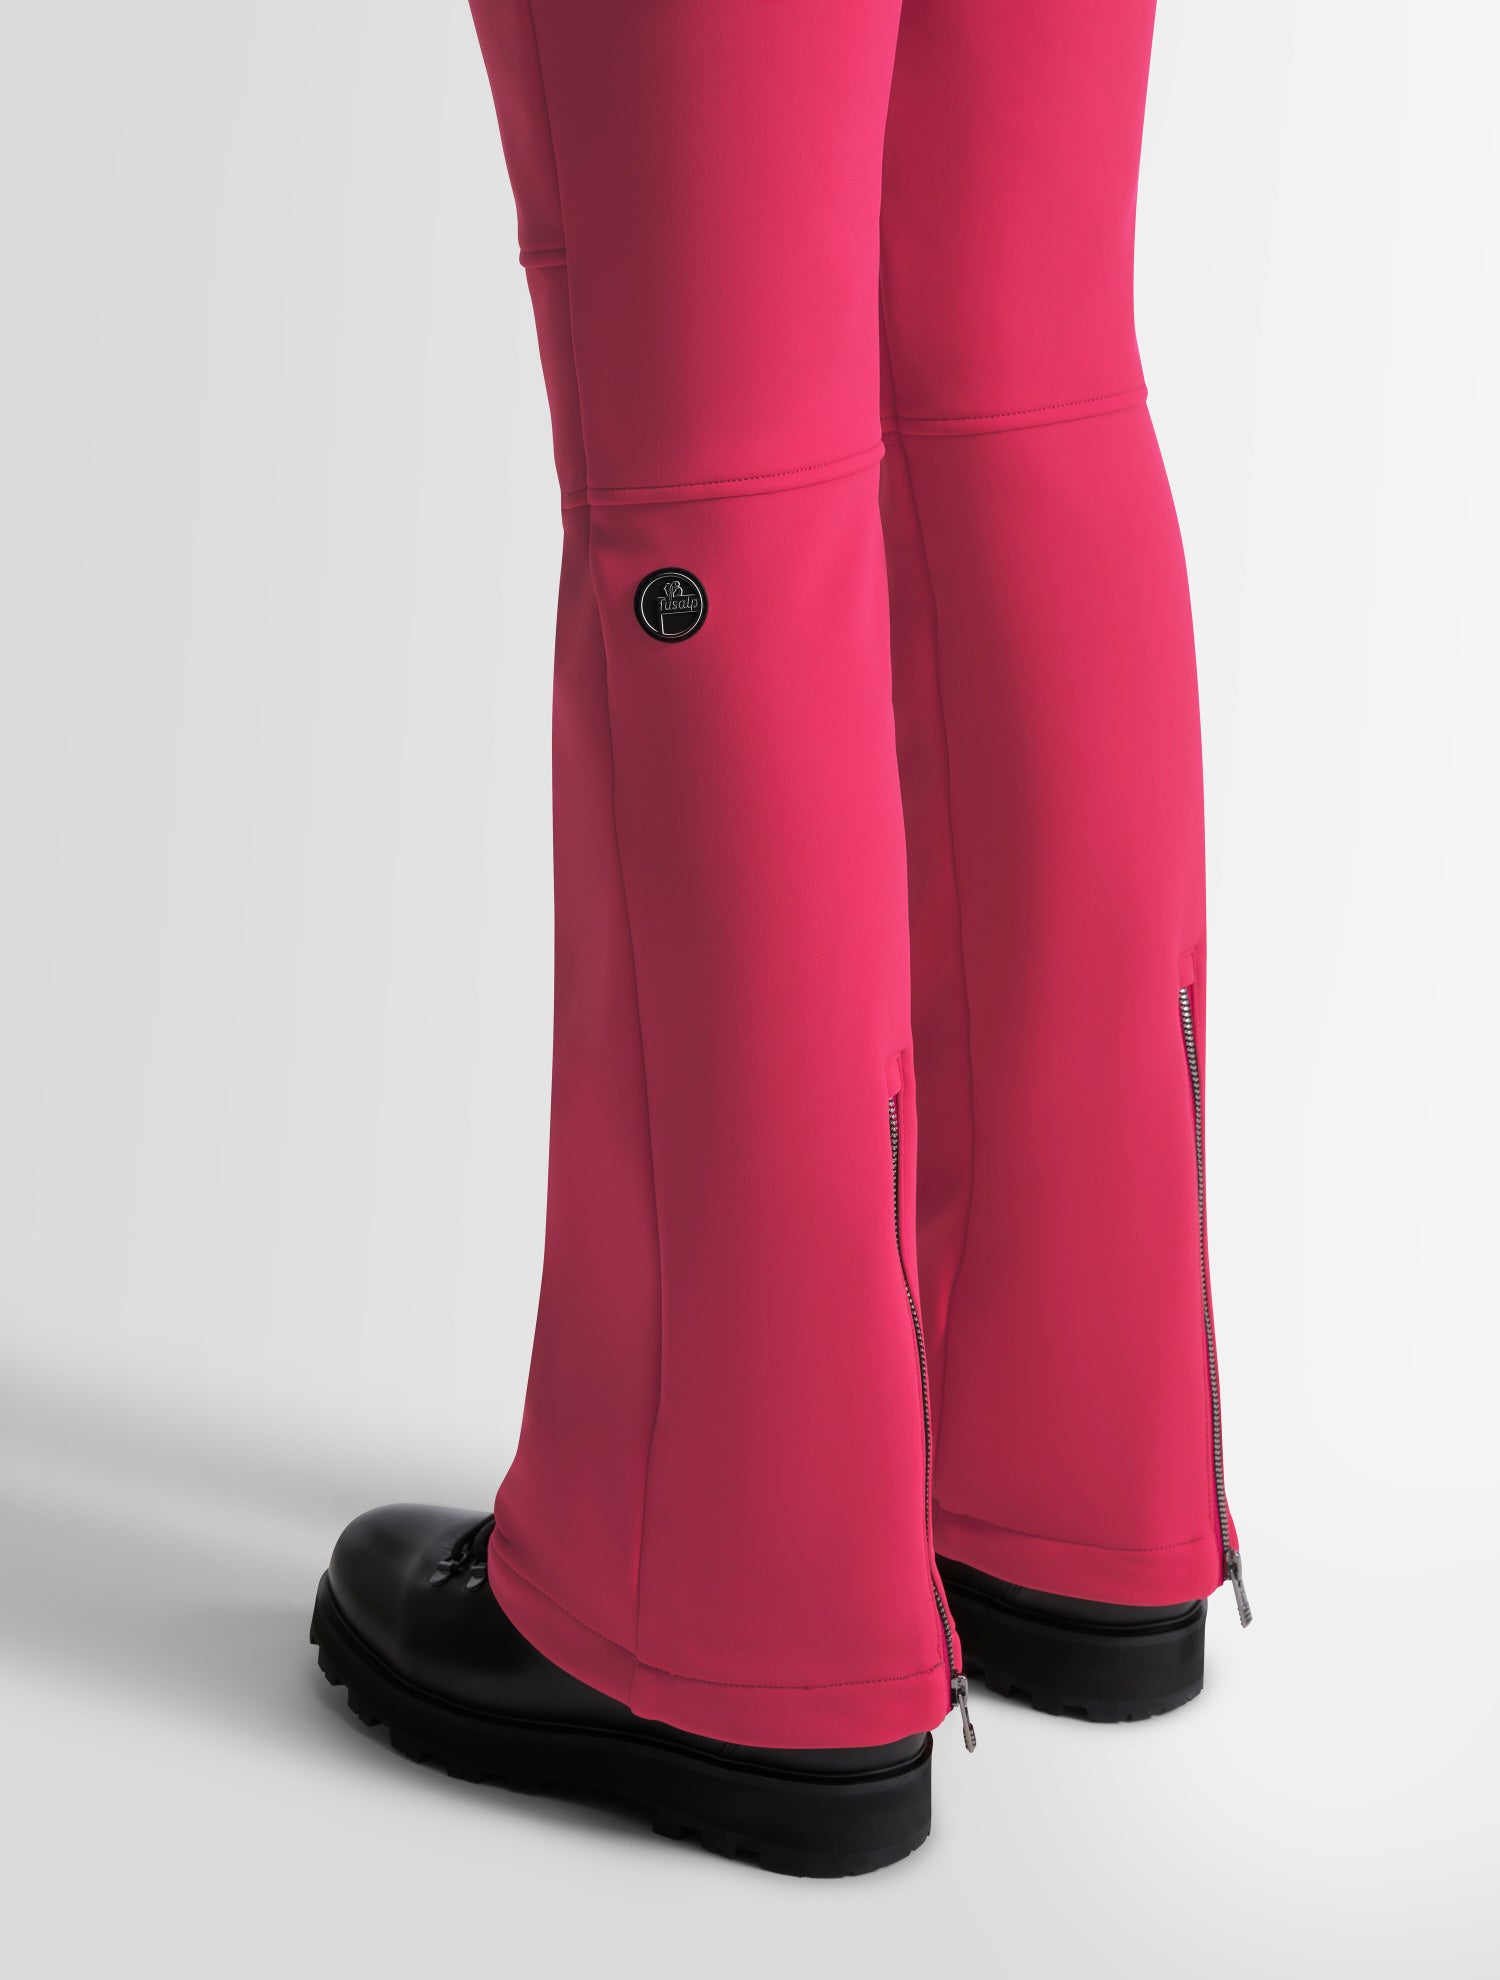 Elancia fitted fuseau ski pants